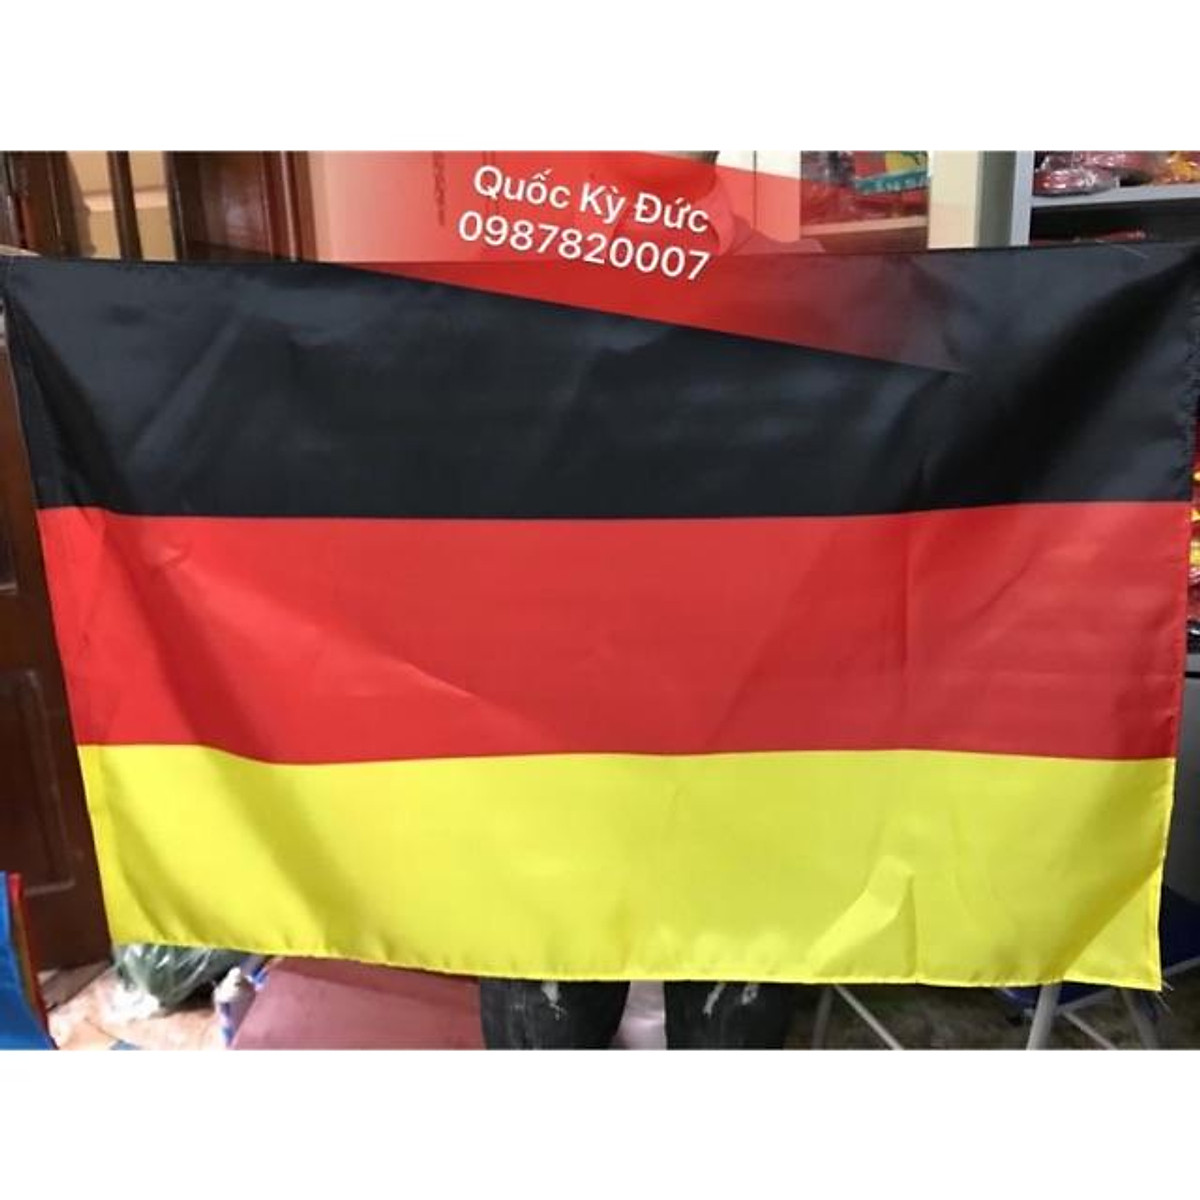 Khi bạn muốn mua cờ quốc kỳ Đức chất lượng tốt, đừng quên đến Xưởng may cờ Thành Công. Với kinh nghiệm lâu năm trong nghề, đội ngũ công nhân chuyên nghiệp và quy trình sản xuất hiện đại, chúng tôi cam kết sẽ đáp ứng mọi nhu cầu của khách hàng về chất lượng và giá cả hợp lý.